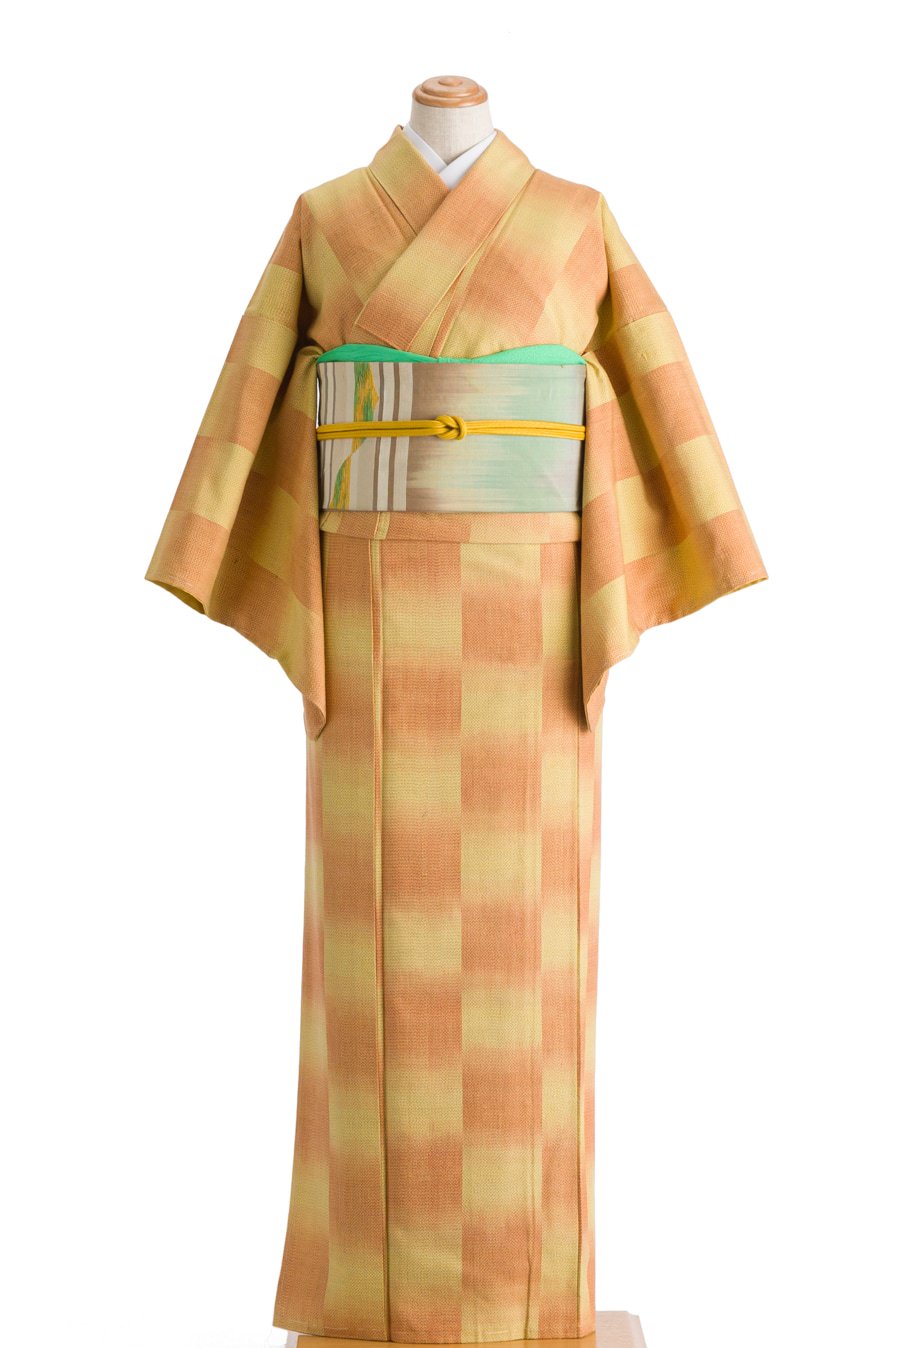 紬 黄色とオレンジの市松 - からん::アンティーク着物・リサイクル着物の通販サイト